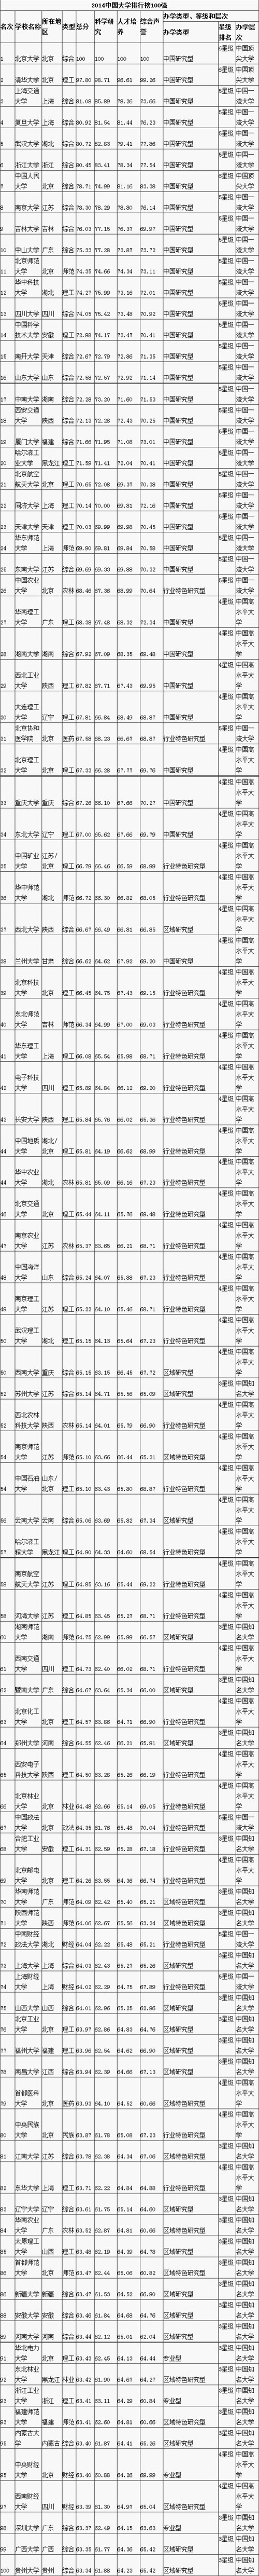 2014中国大学排行榜100强揭晓 北大八连冠